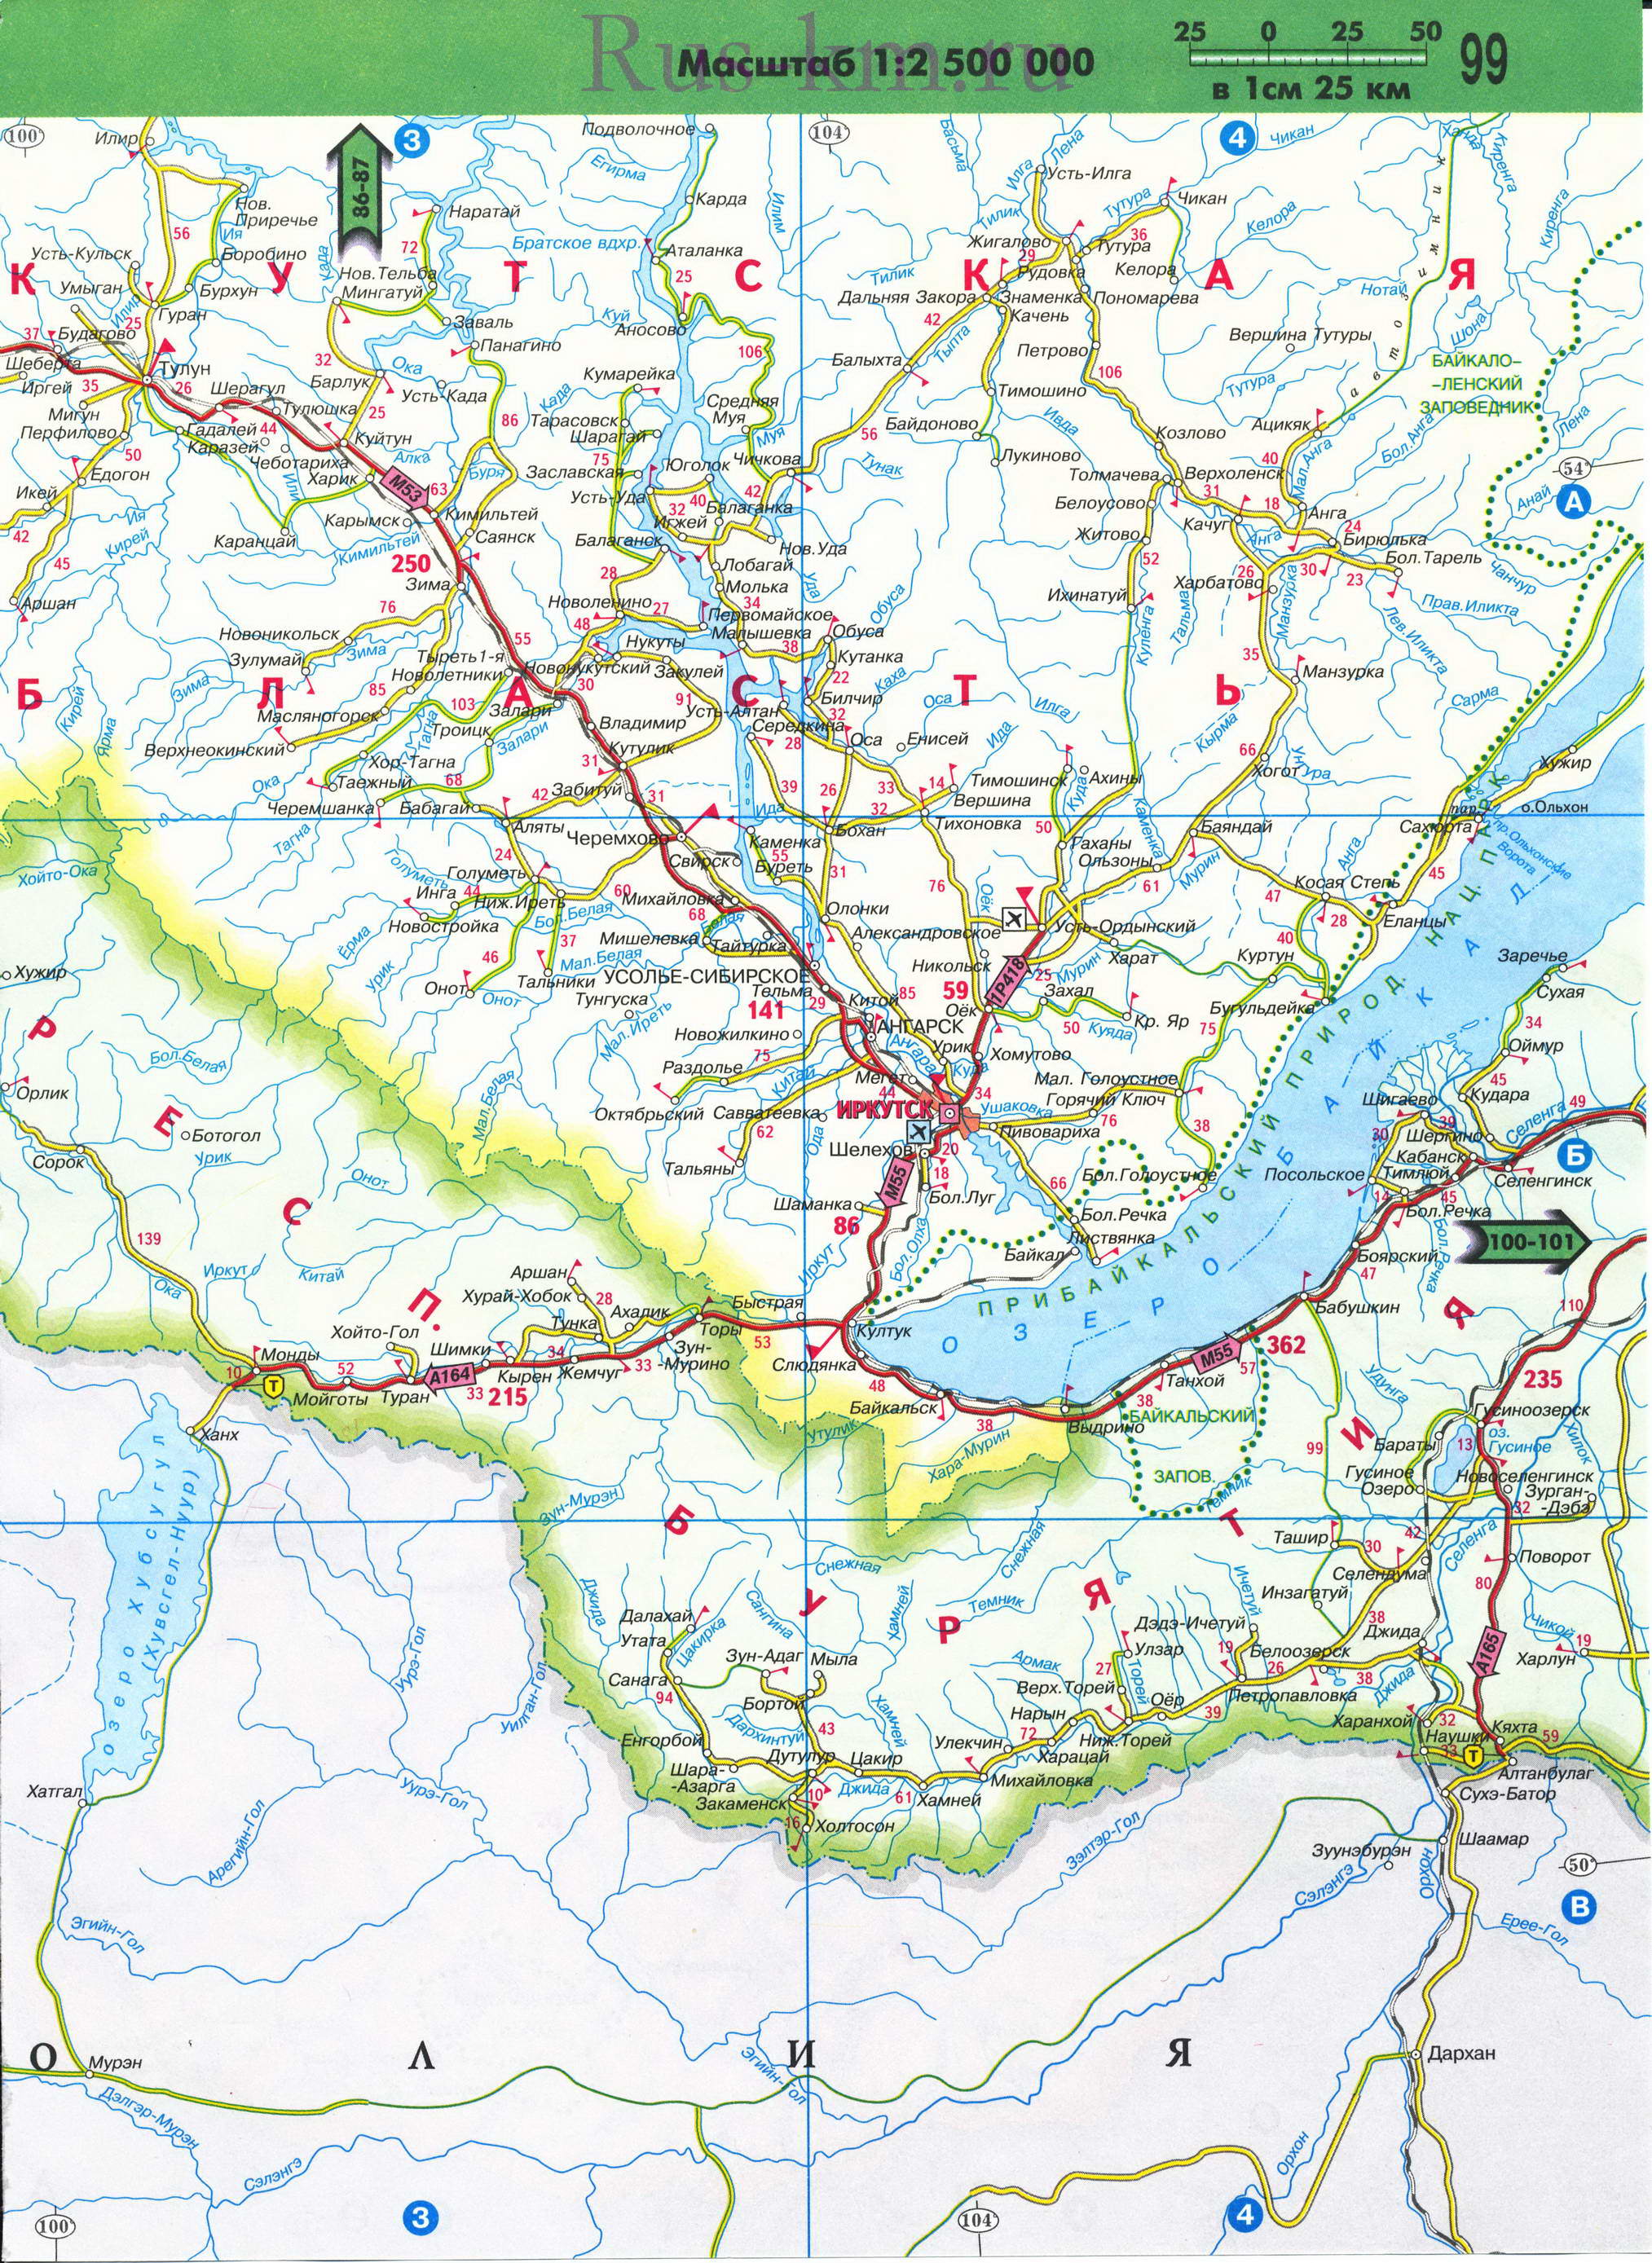 Карта Иркутской области автодорожная. Новая 2011 года карта дорог Иркутской области масштаба 1см:25км, B1 - 